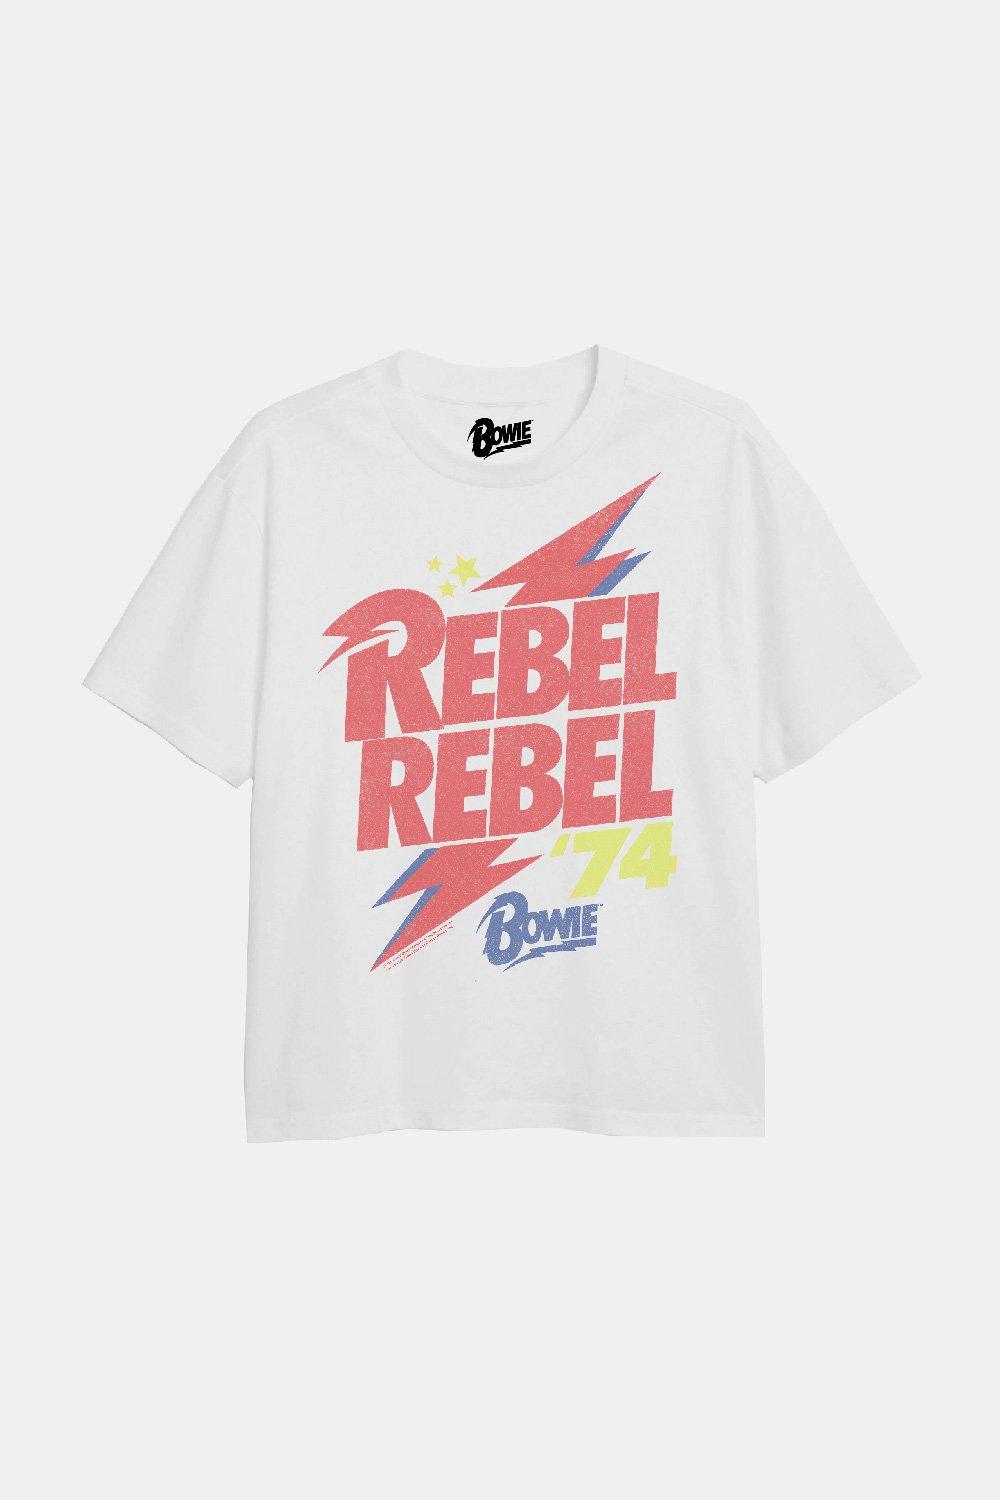 Rebel Rebel Girls T-Shirt